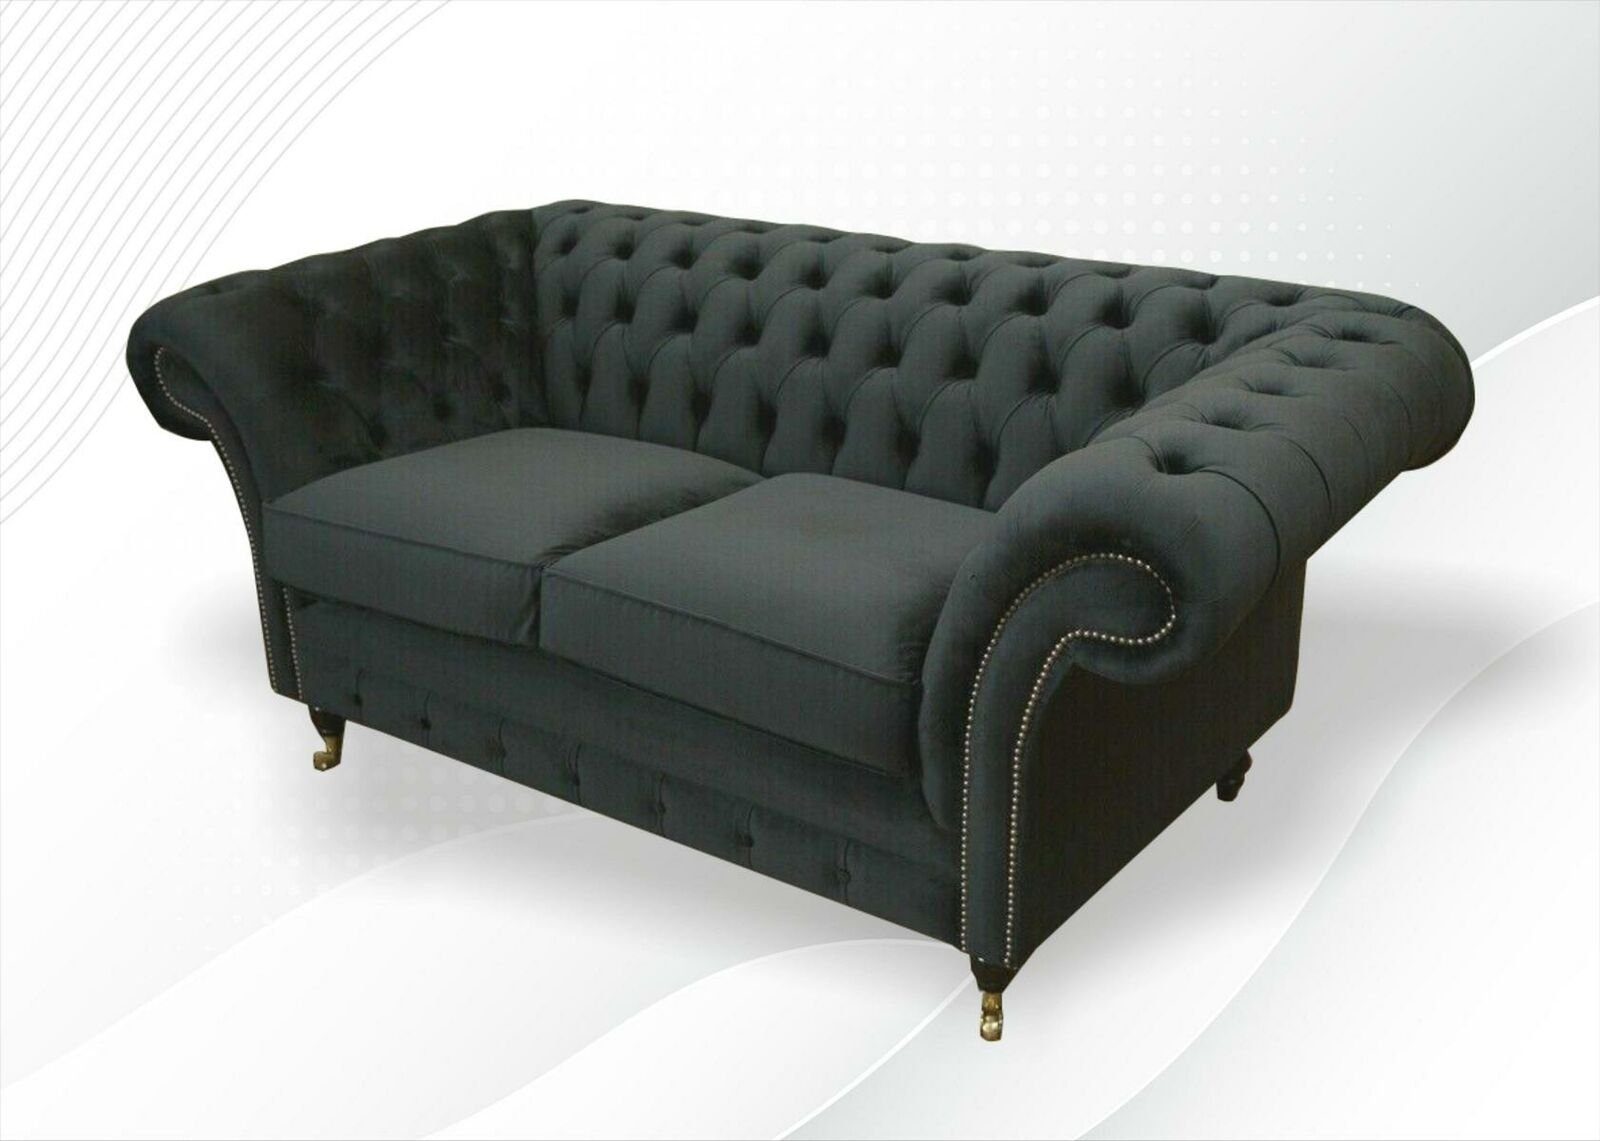 Made in Chesterfield JVmoebel Polster Möbel luxus Schwarzer Europe Design Sofa Neu, Zweisitzer